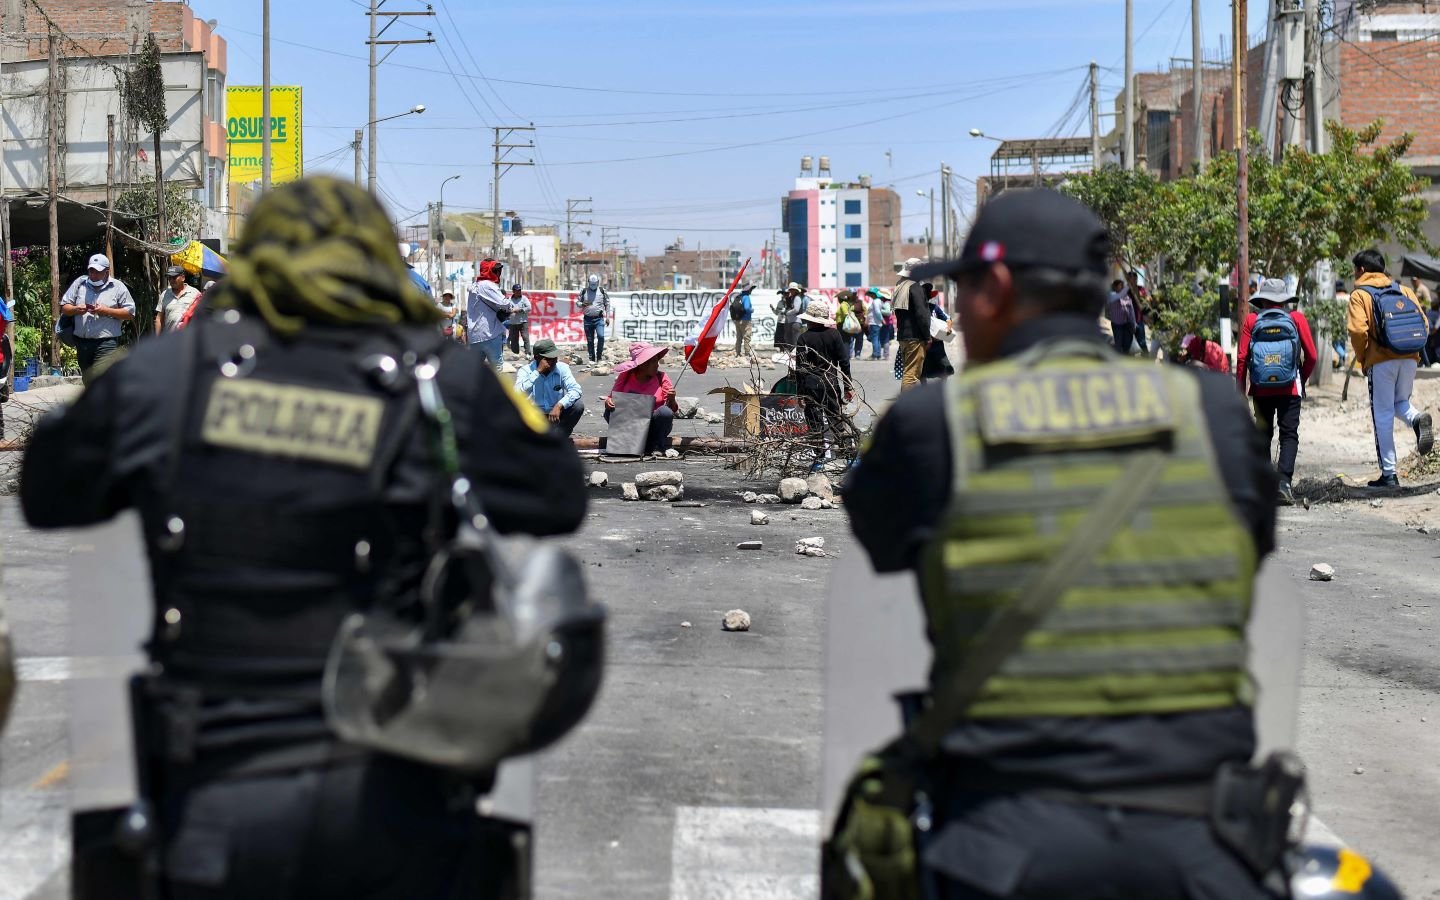 سقوط 12 قتيلاً في البيرو في صدامات بين متظاهرين وقوات الأمن